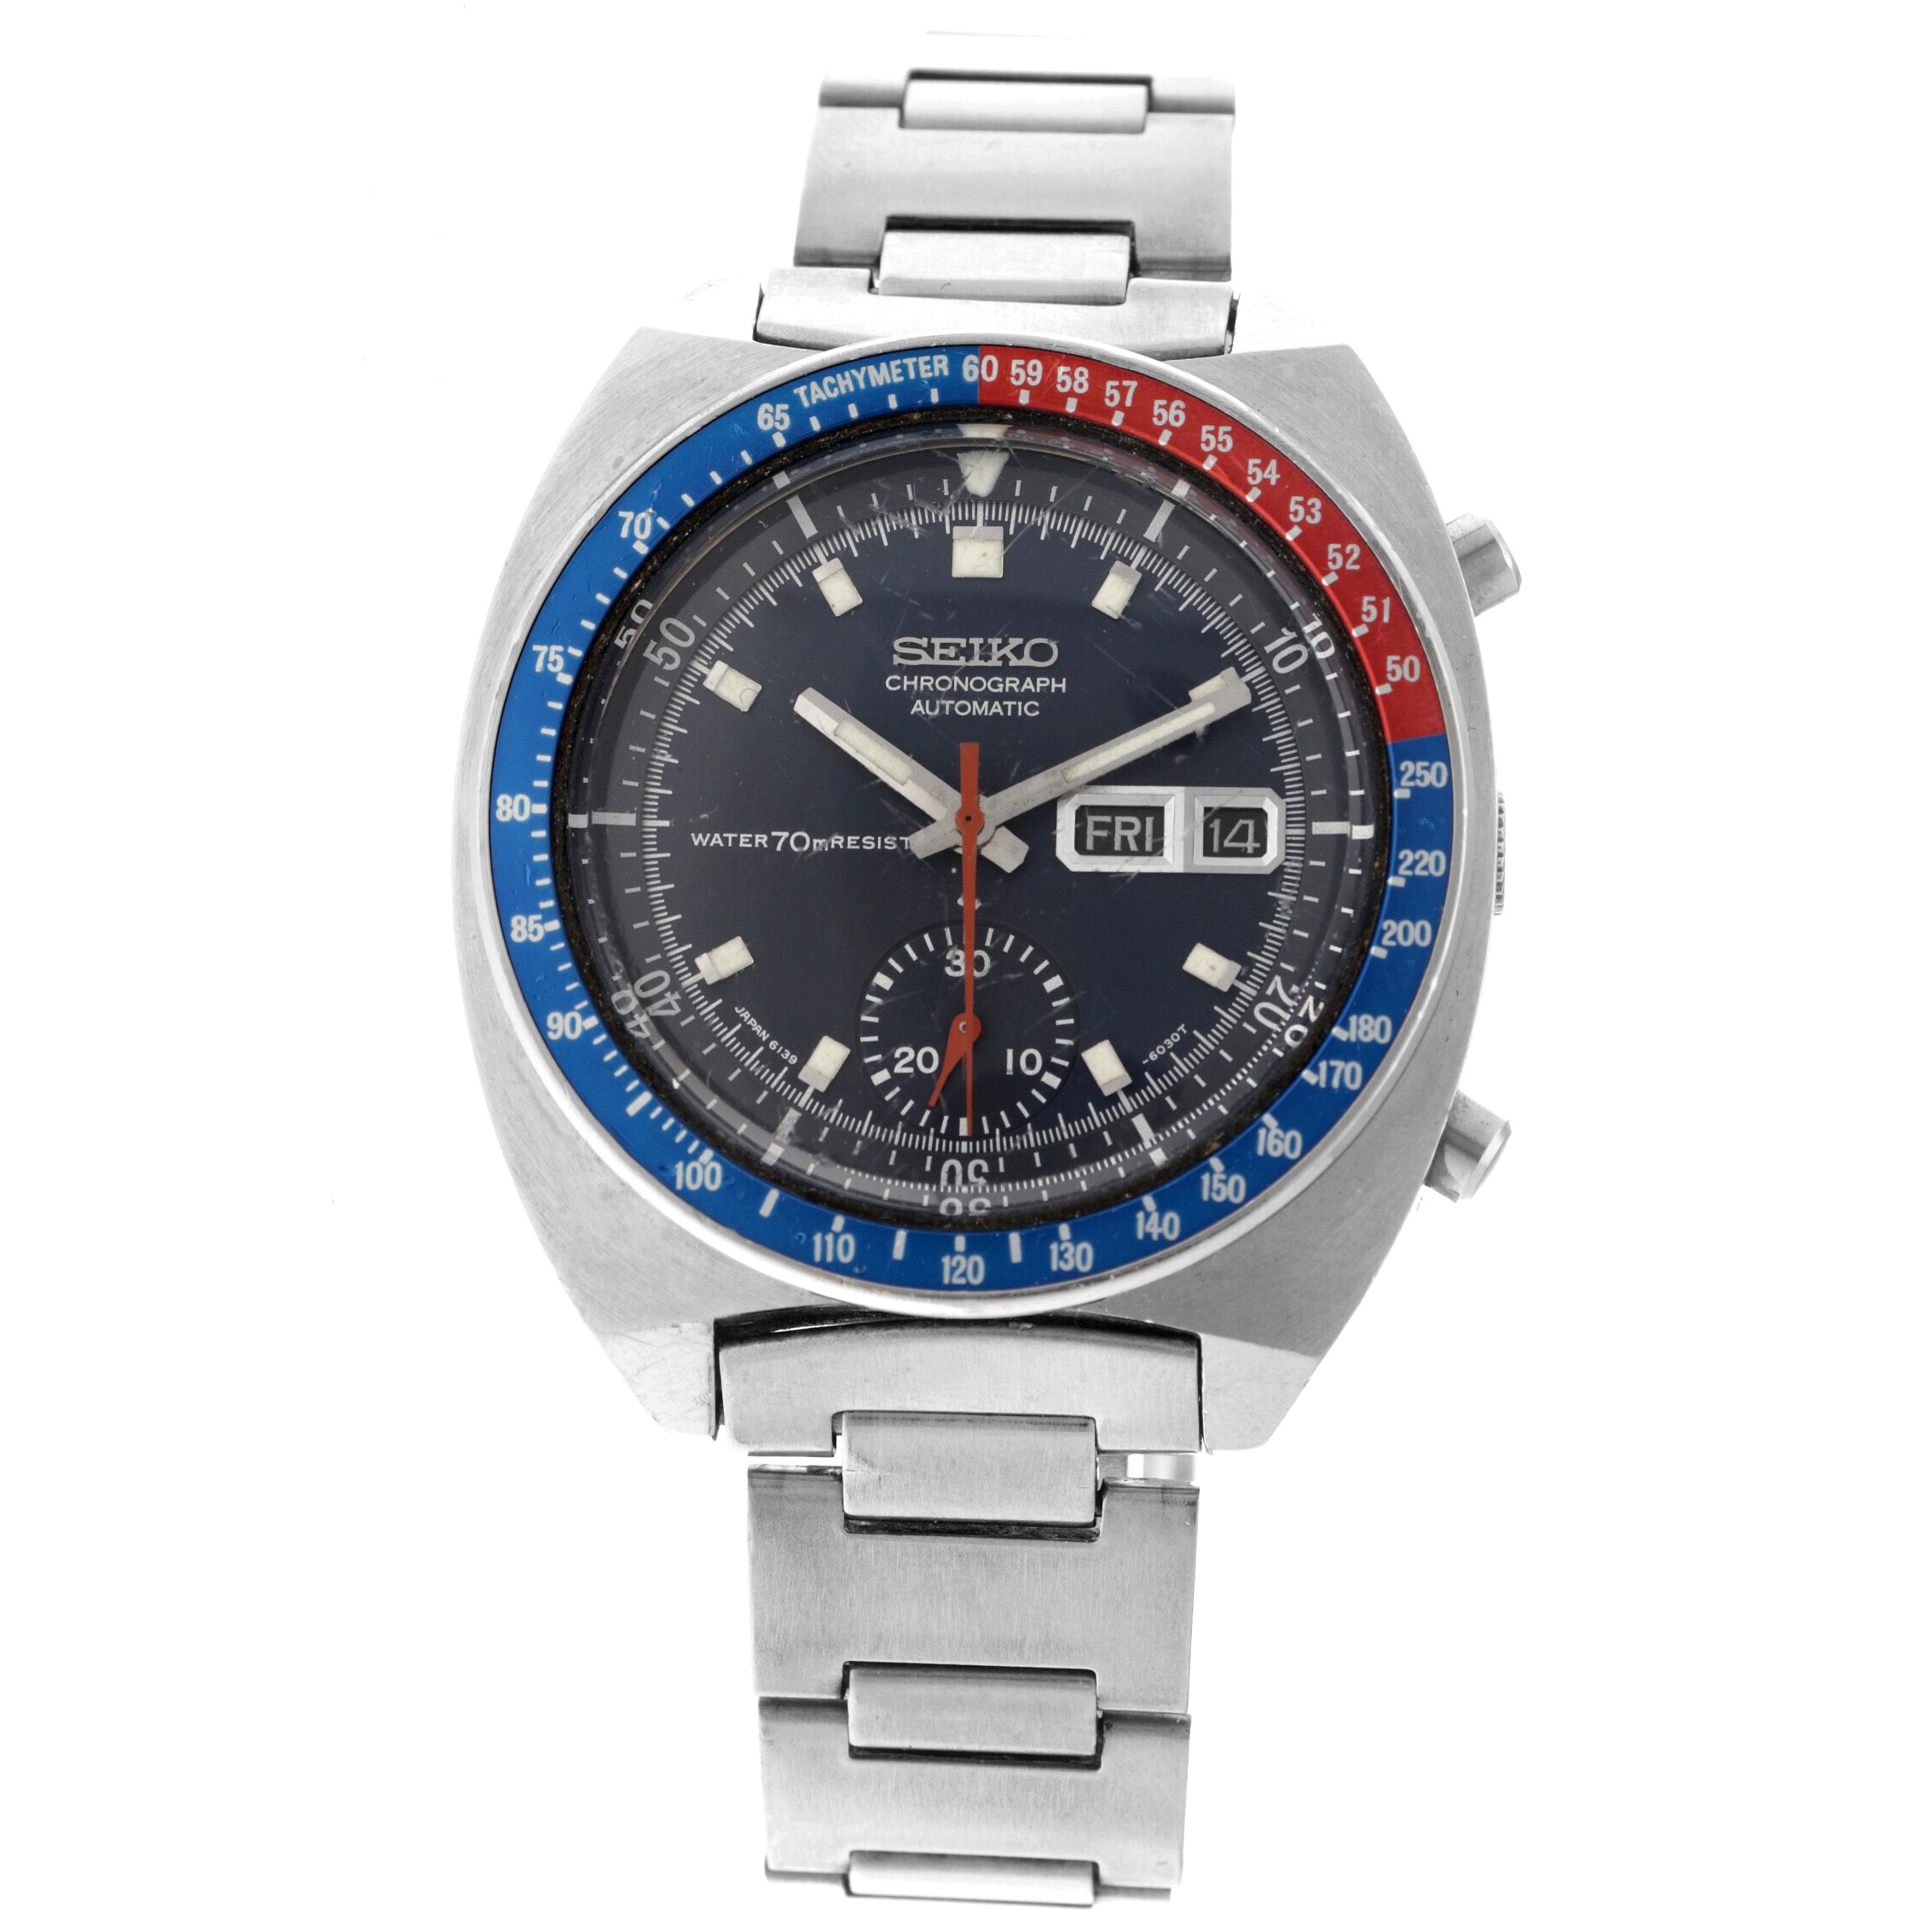 No Reserve - Seiko Pogue 'Pepsi' Chronograph Automatic 6139-6002 - Men's watch.